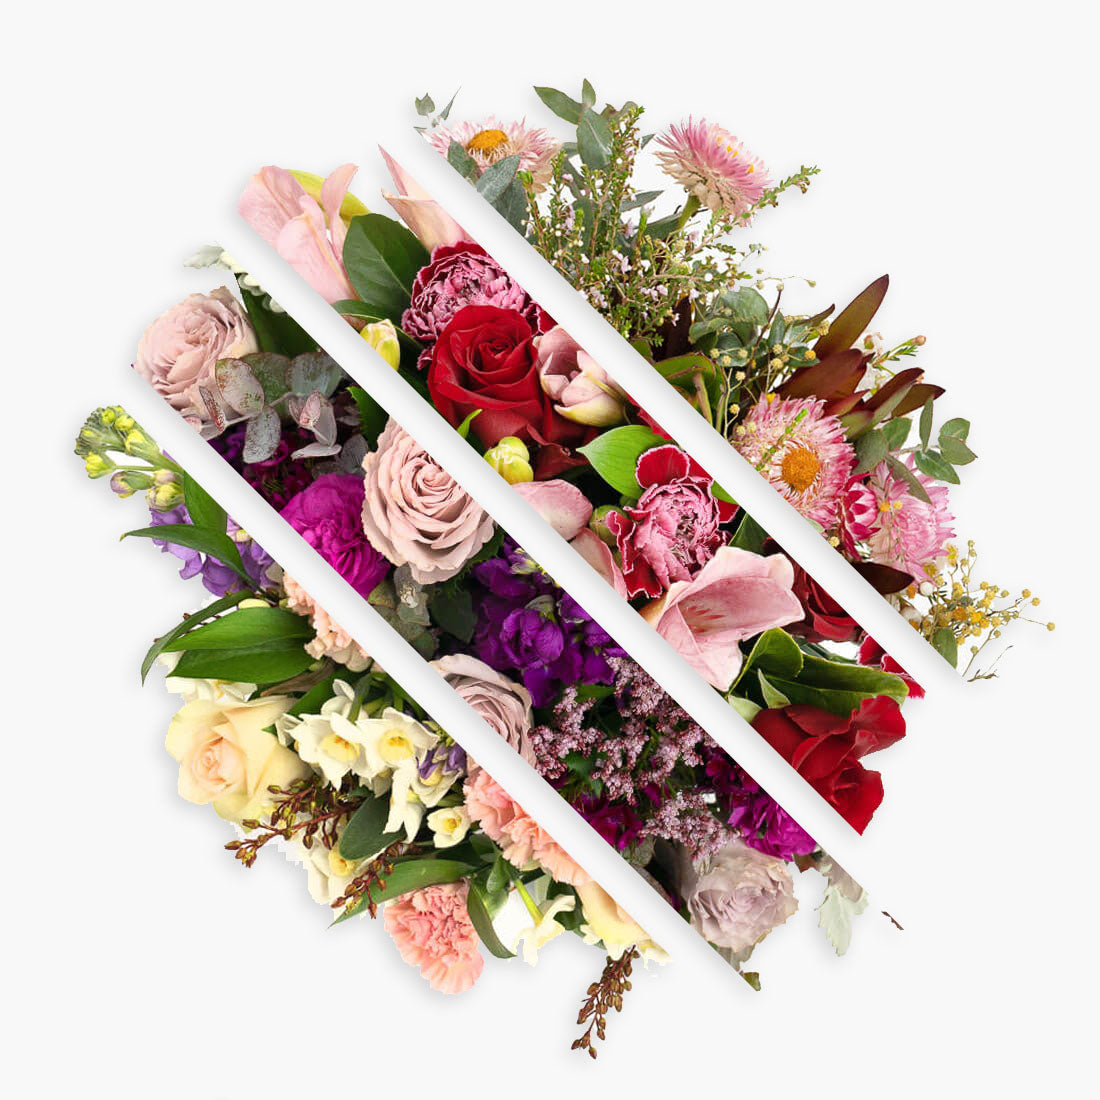 Custom Geelong florist flower arrangement for businesses